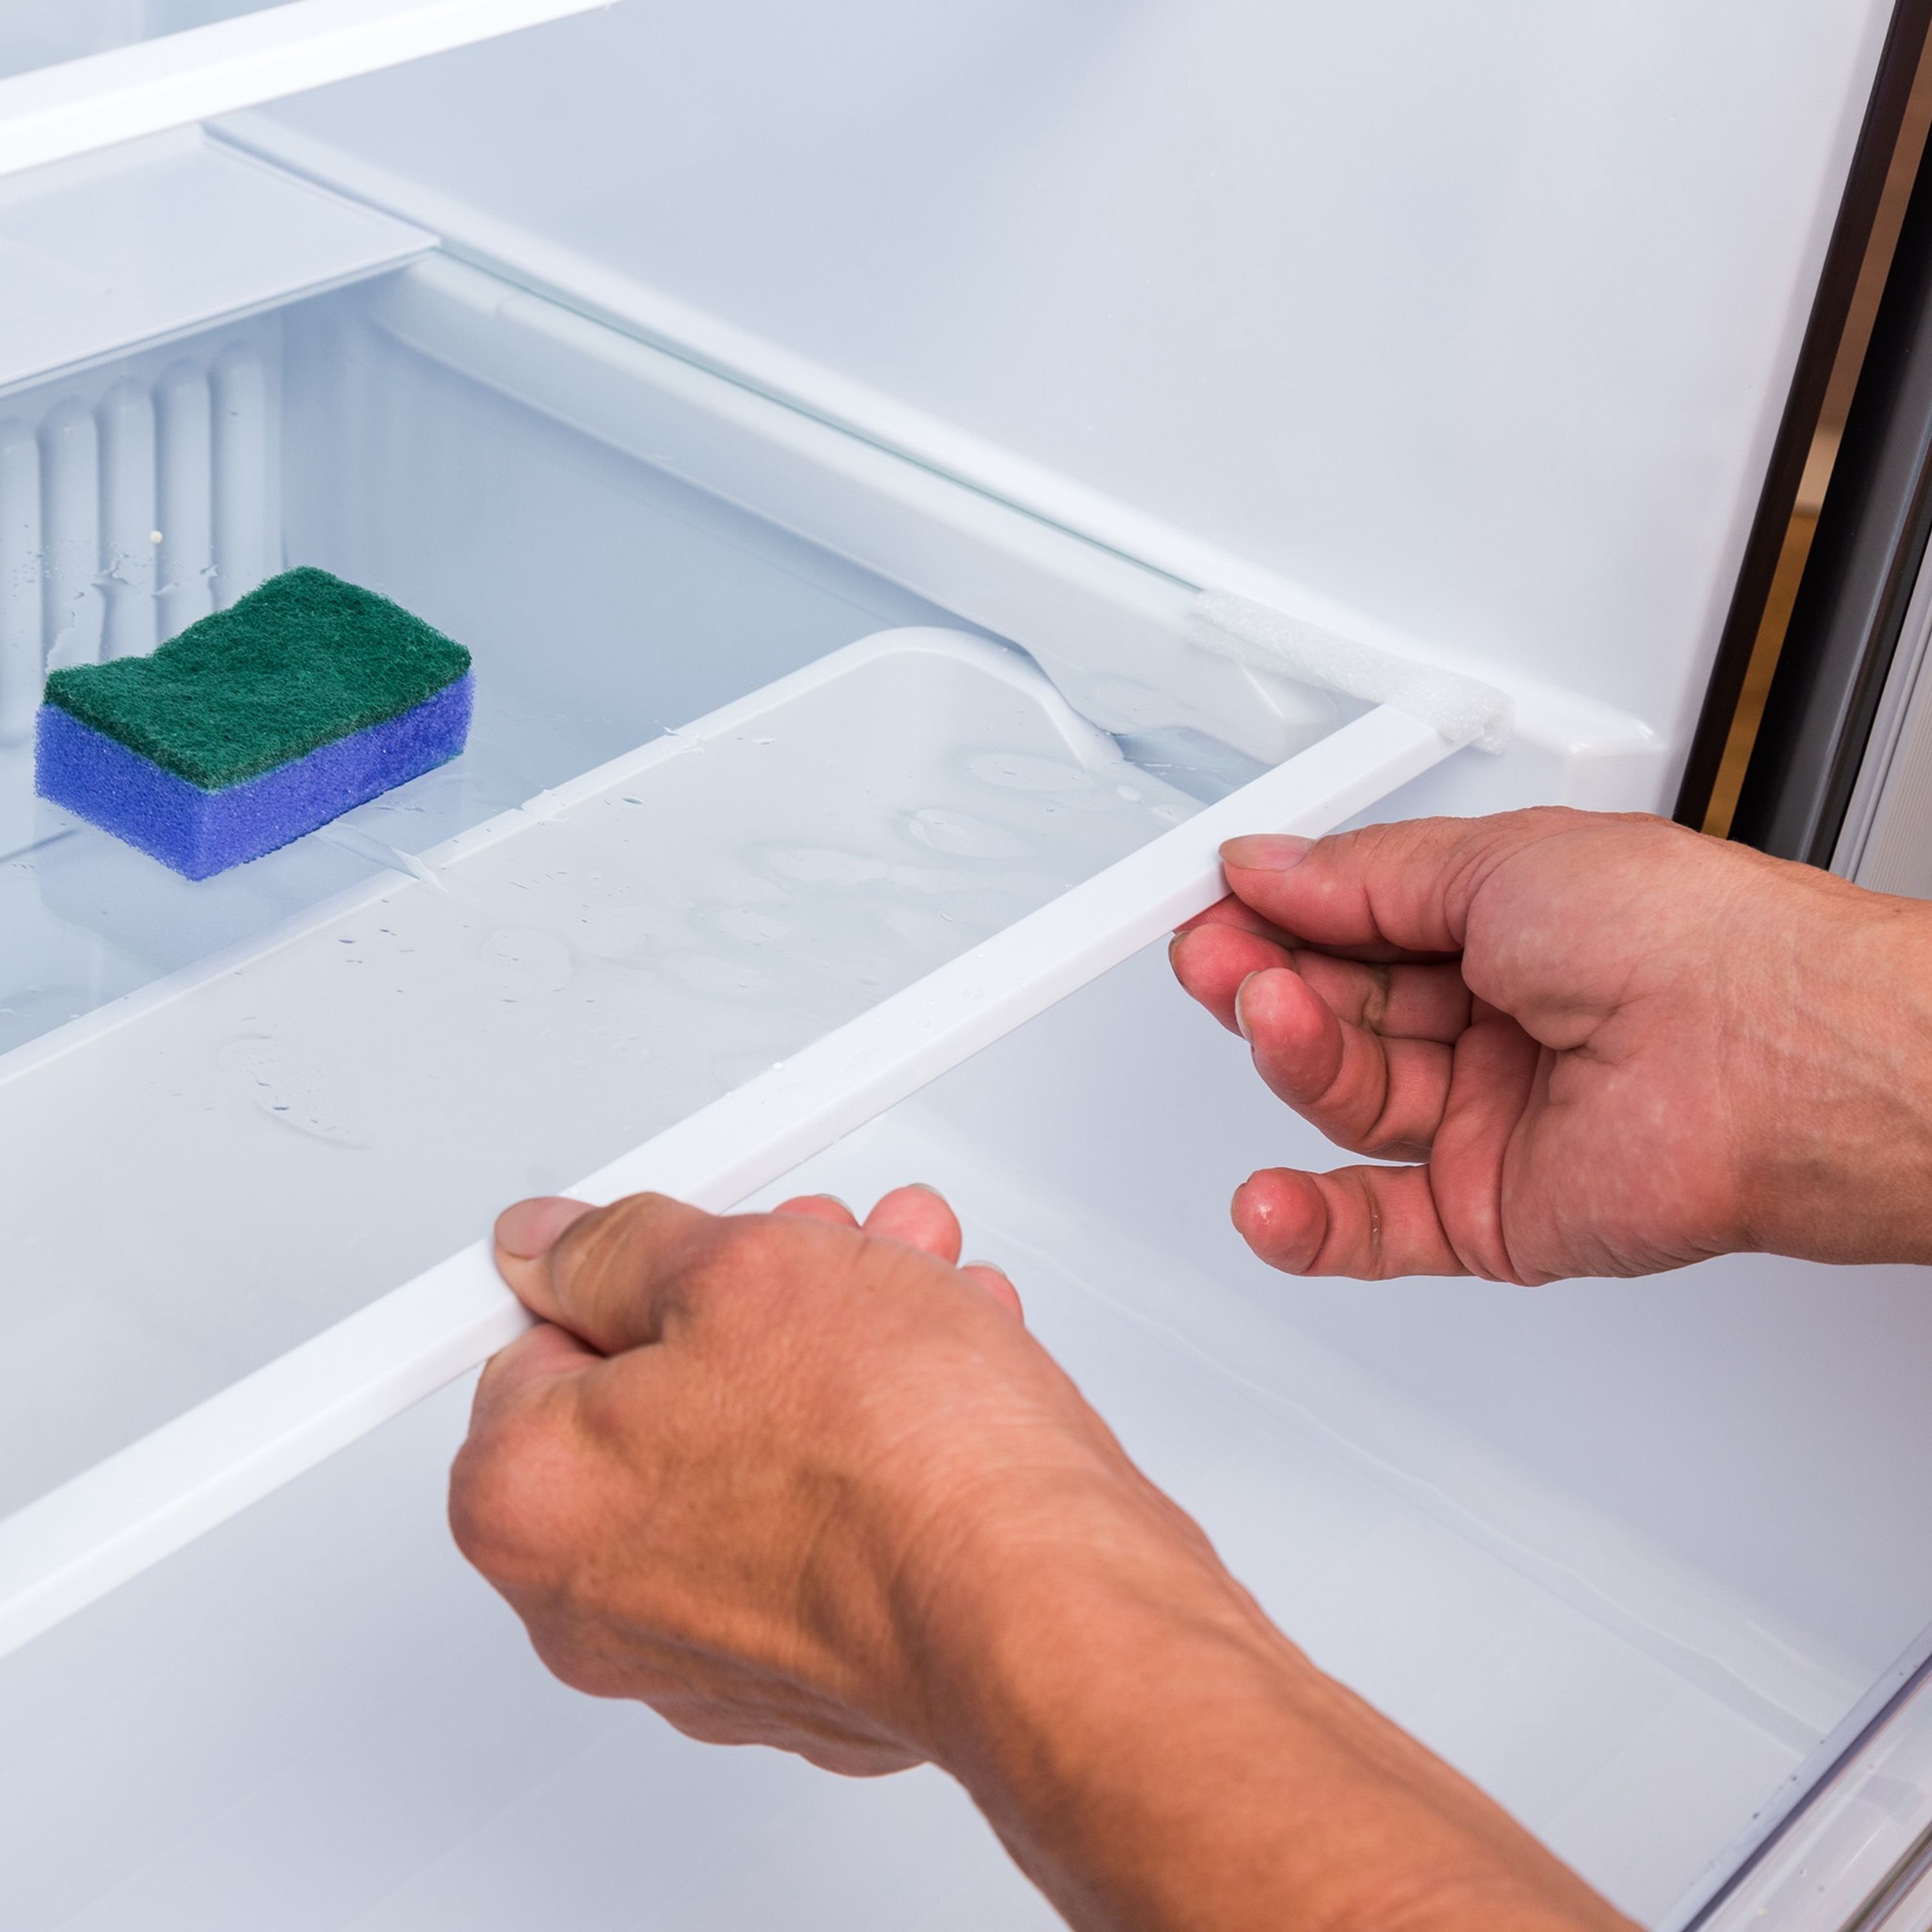 Pourquoi faut-il mettre une éponge au réfrigérateur ?